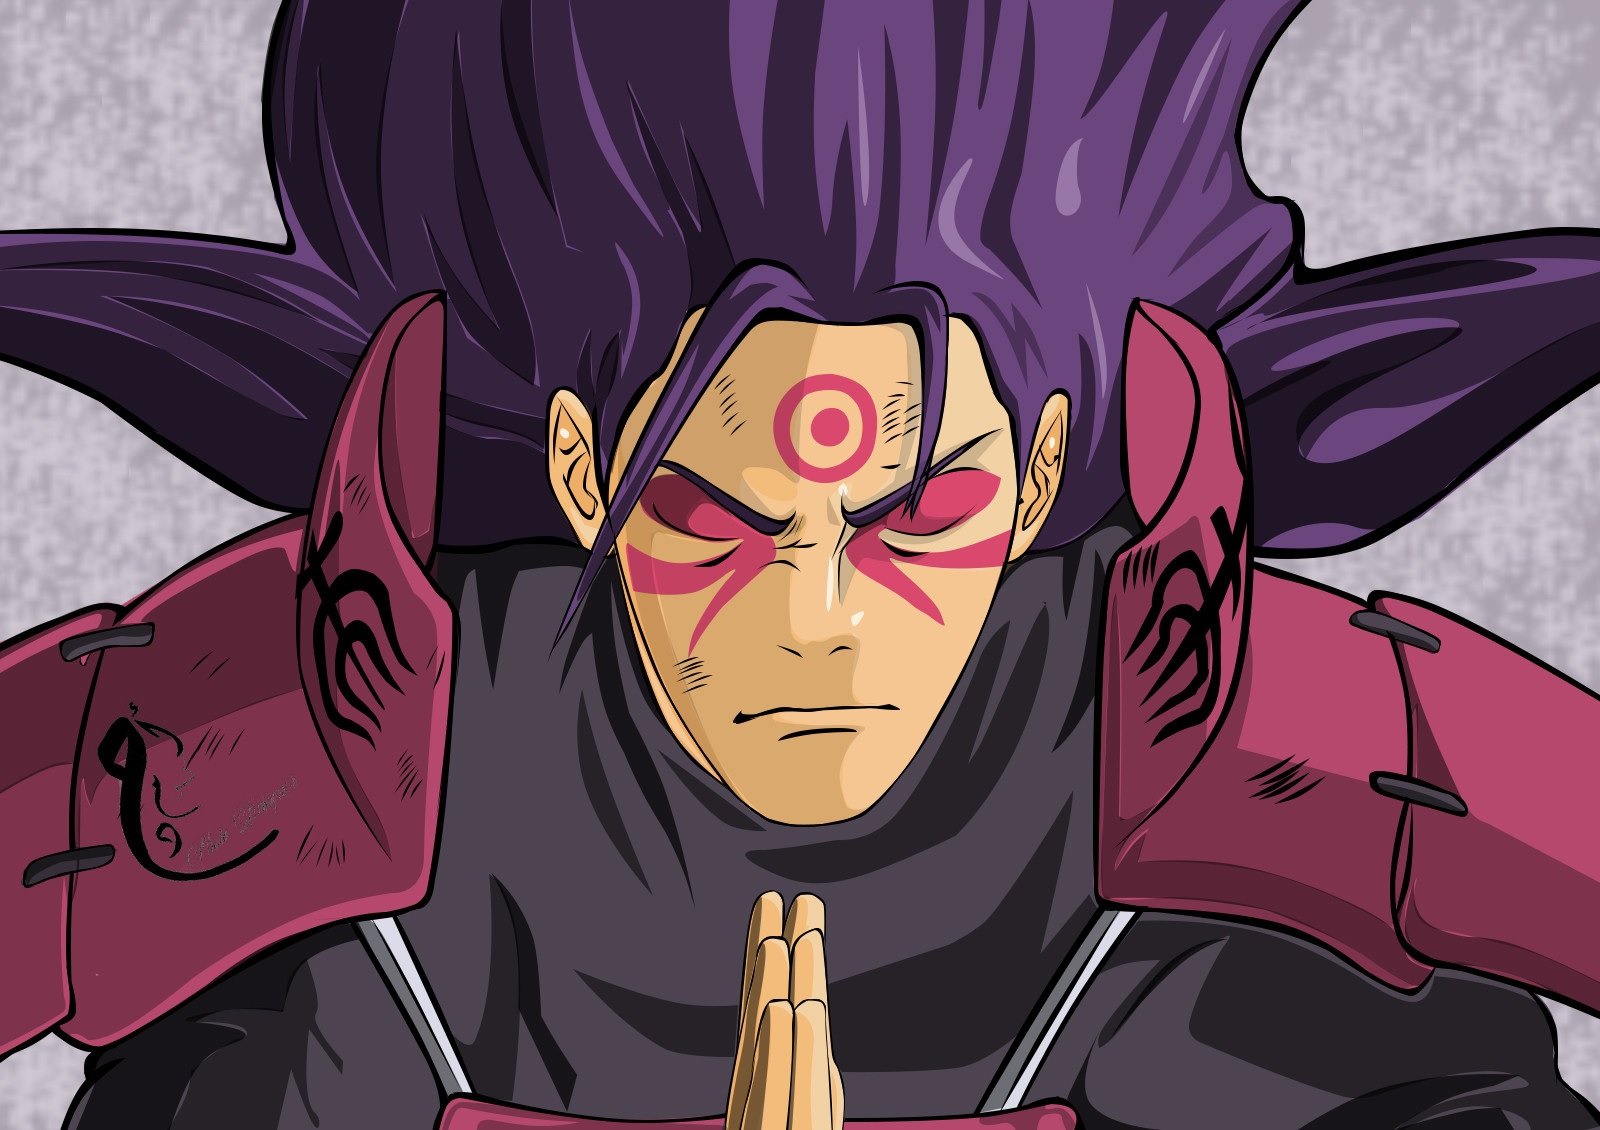 Afinal, o modo Barion do Naruto seria capaz de derrotar Hashirama